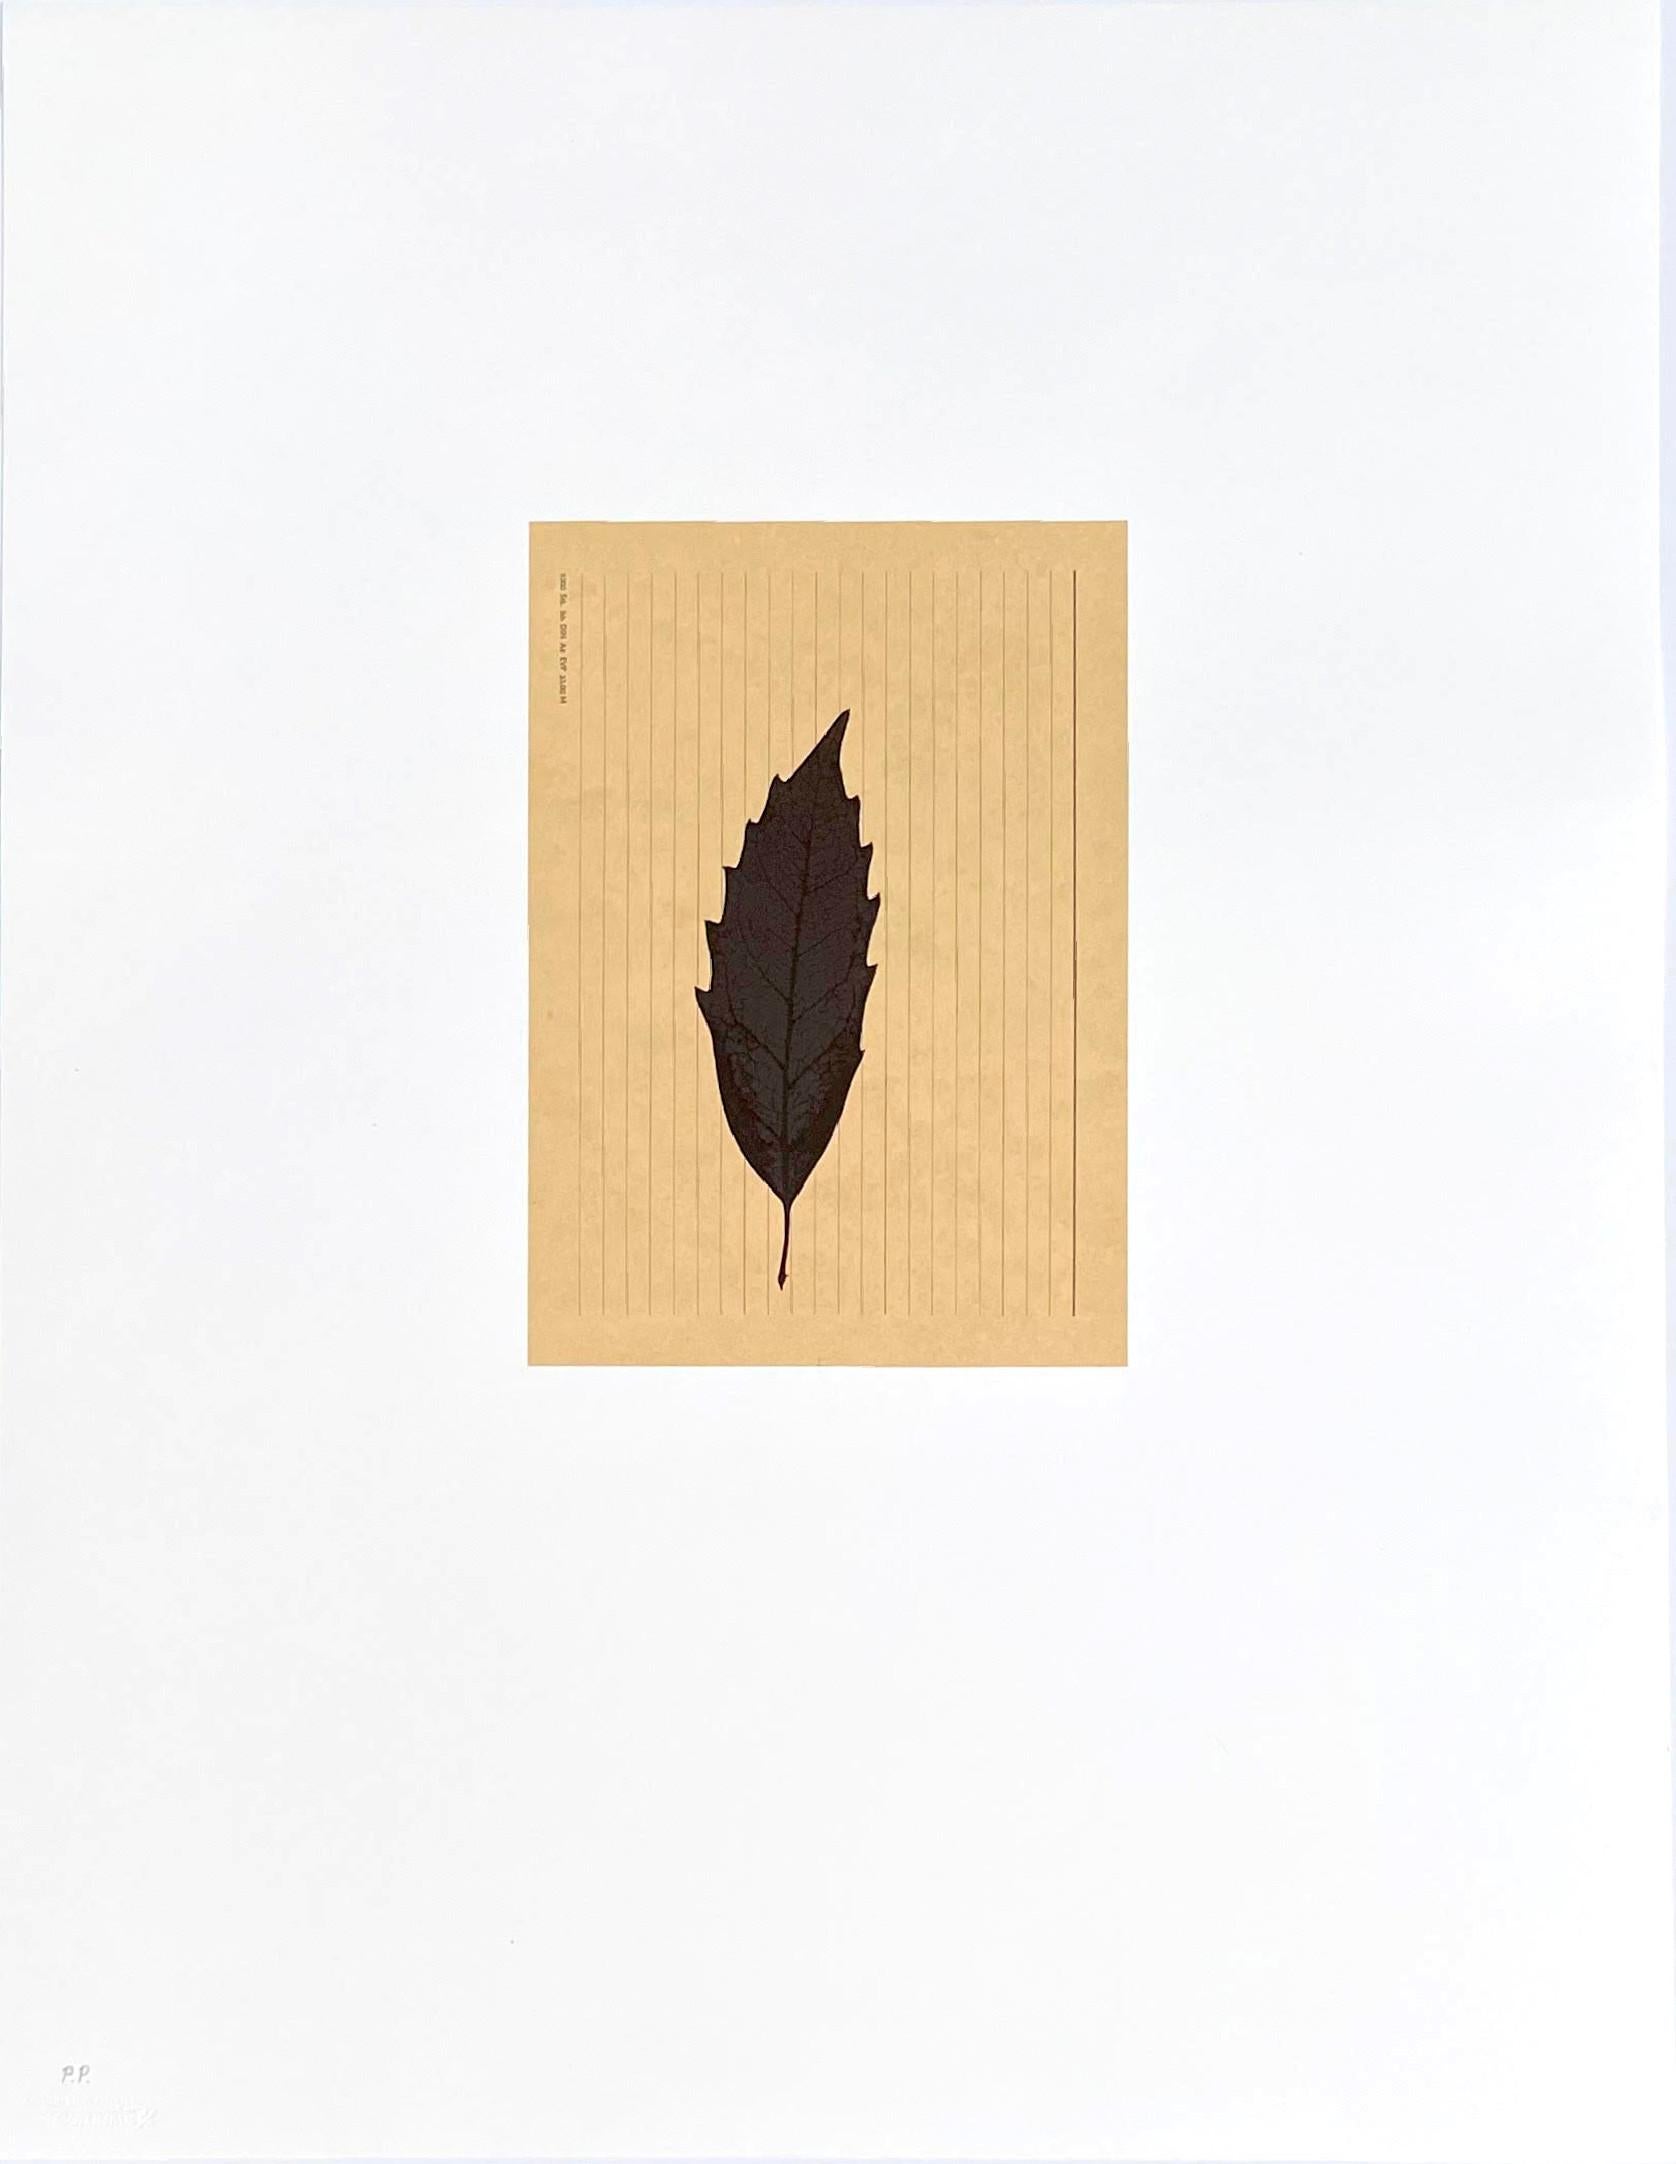 Blatt auf Karteikarte, aus dem Portfolio Columbus: Auf der Suche nach einem neuen Morgen – Print von Joseph Beuys